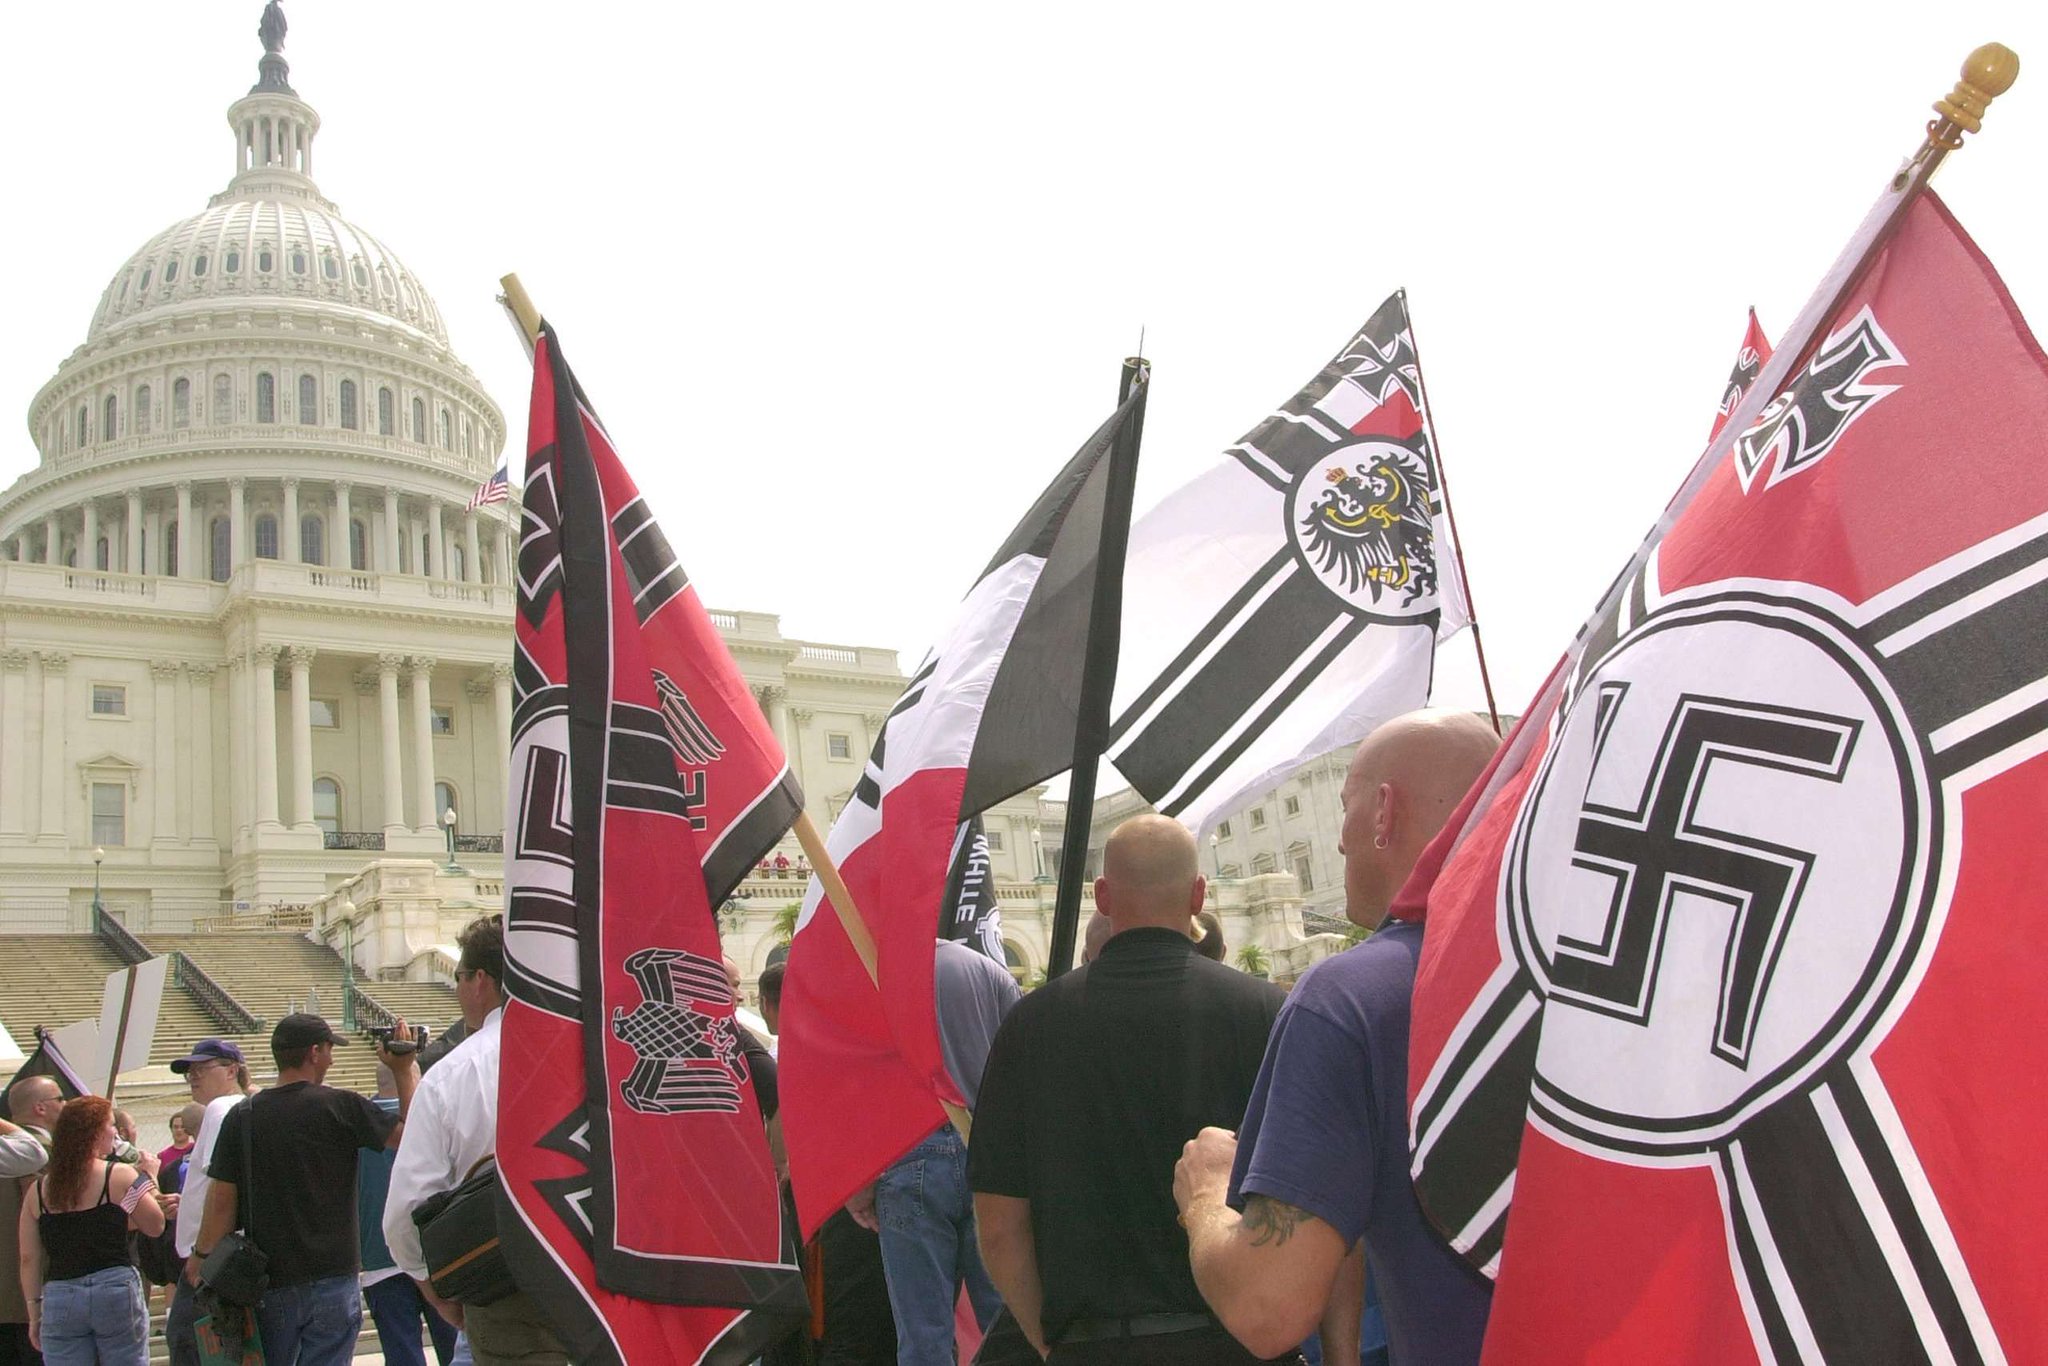 Национал флаг. Нацистская партия США. Национал Социалистическая партия США. Флаг неонацистов США. Американские нацисты.